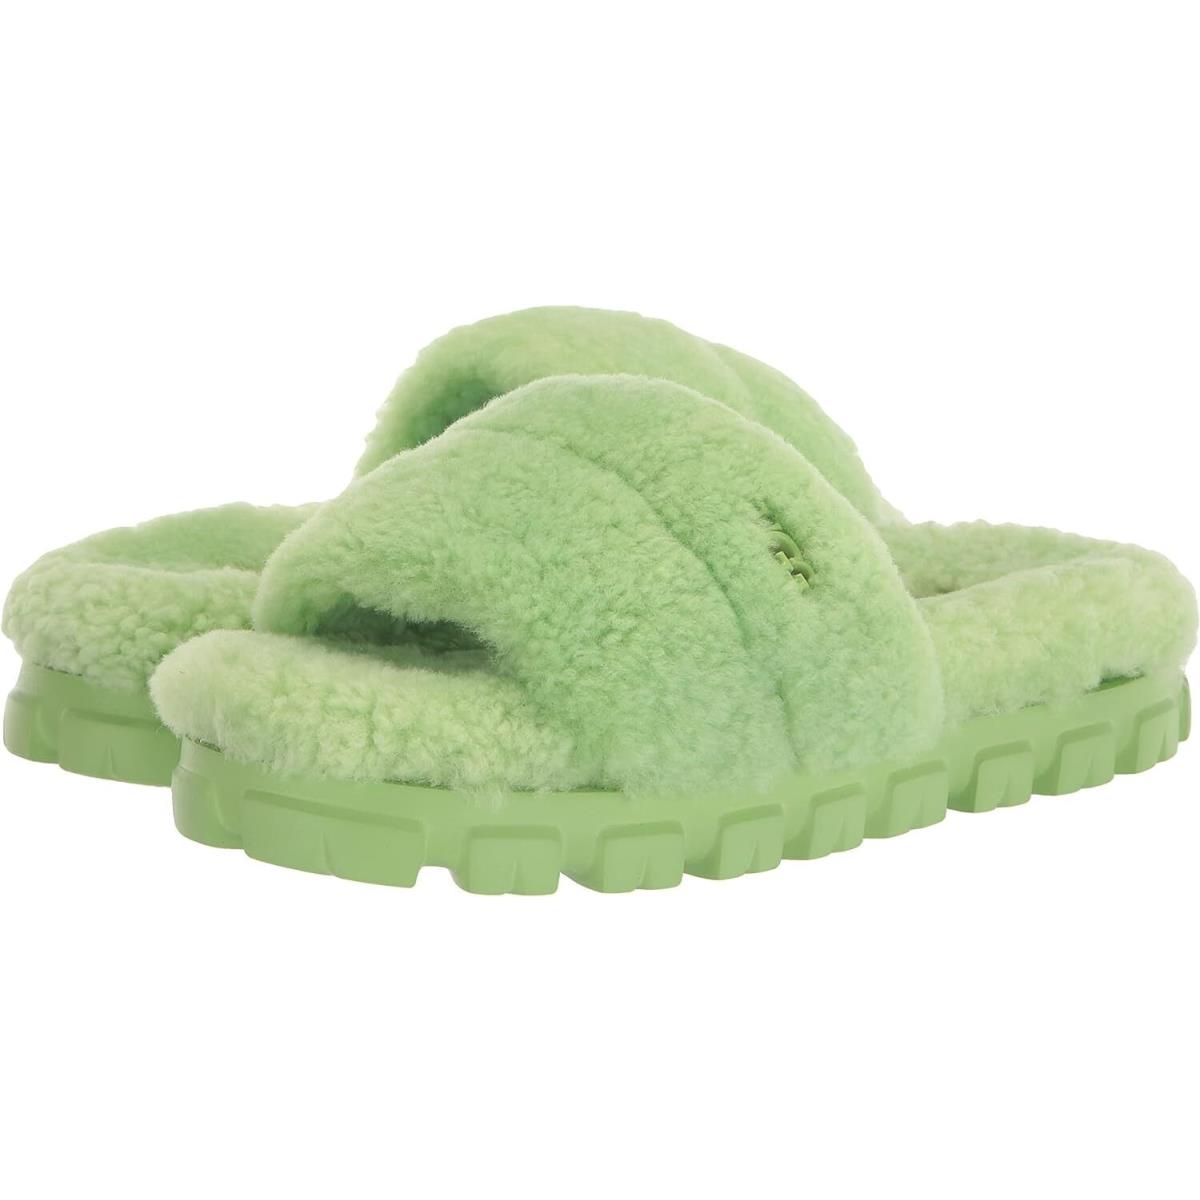 Women`s Shoes Ugg Cozetta Curly Slipper Slide Sandals 1130838 Parakeet Green